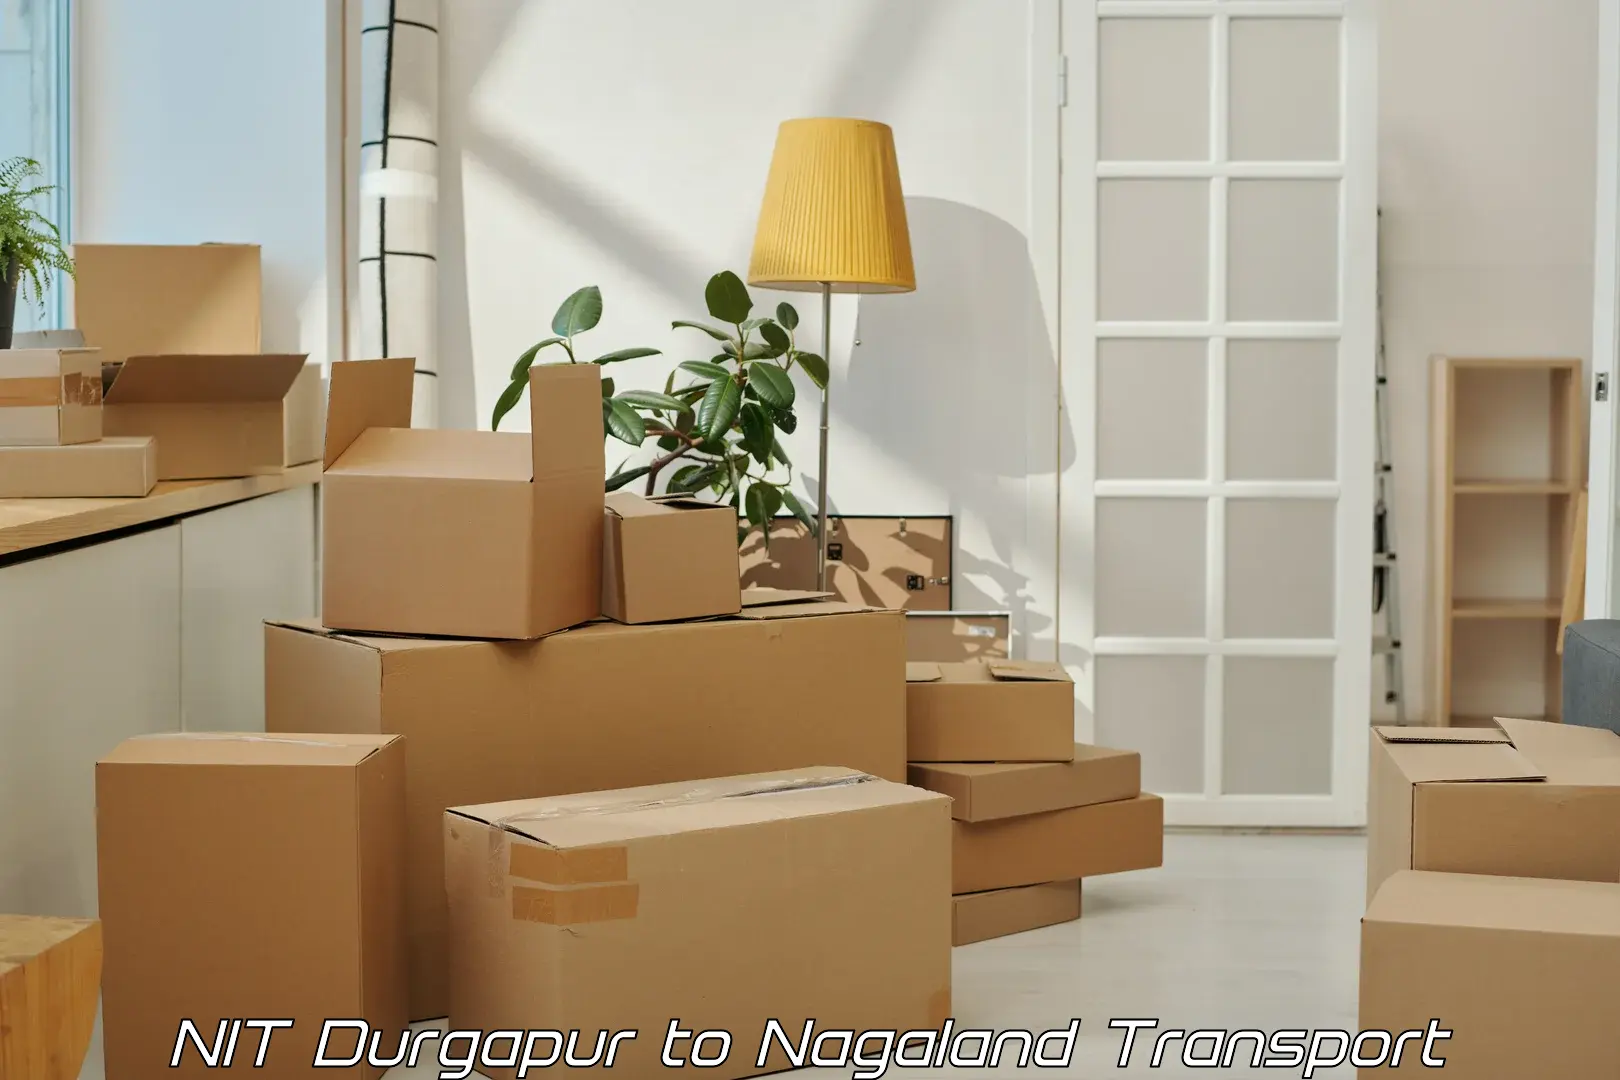 Vehicle parcel service NIT Durgapur to Nagaland